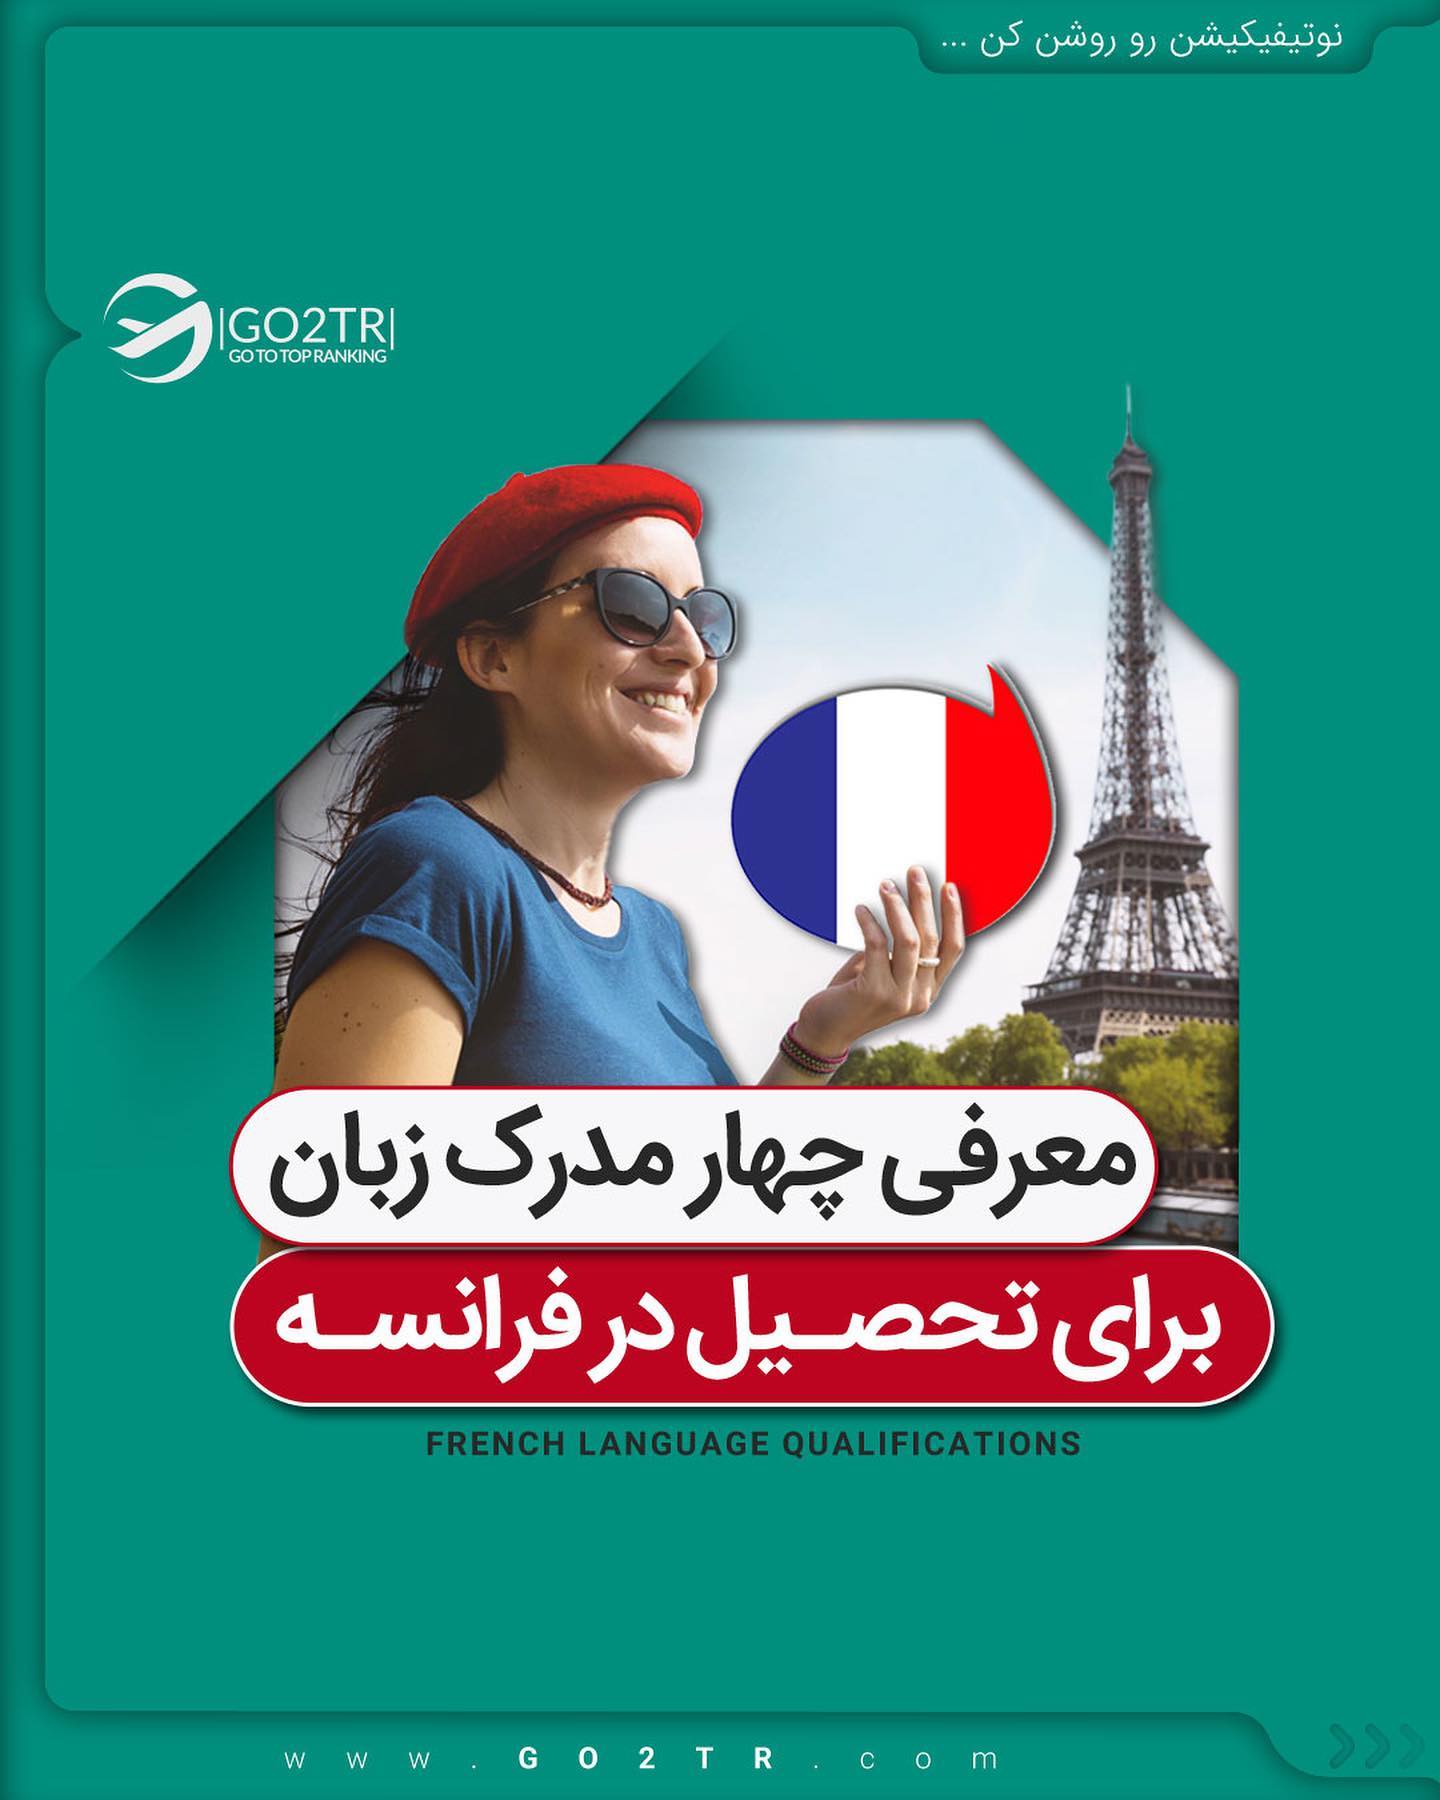 اولا برای مهاجرت به فرانسه مدرک زبان شرط نیست! 🤩چون که راه حل داره... . • ⭐️بر